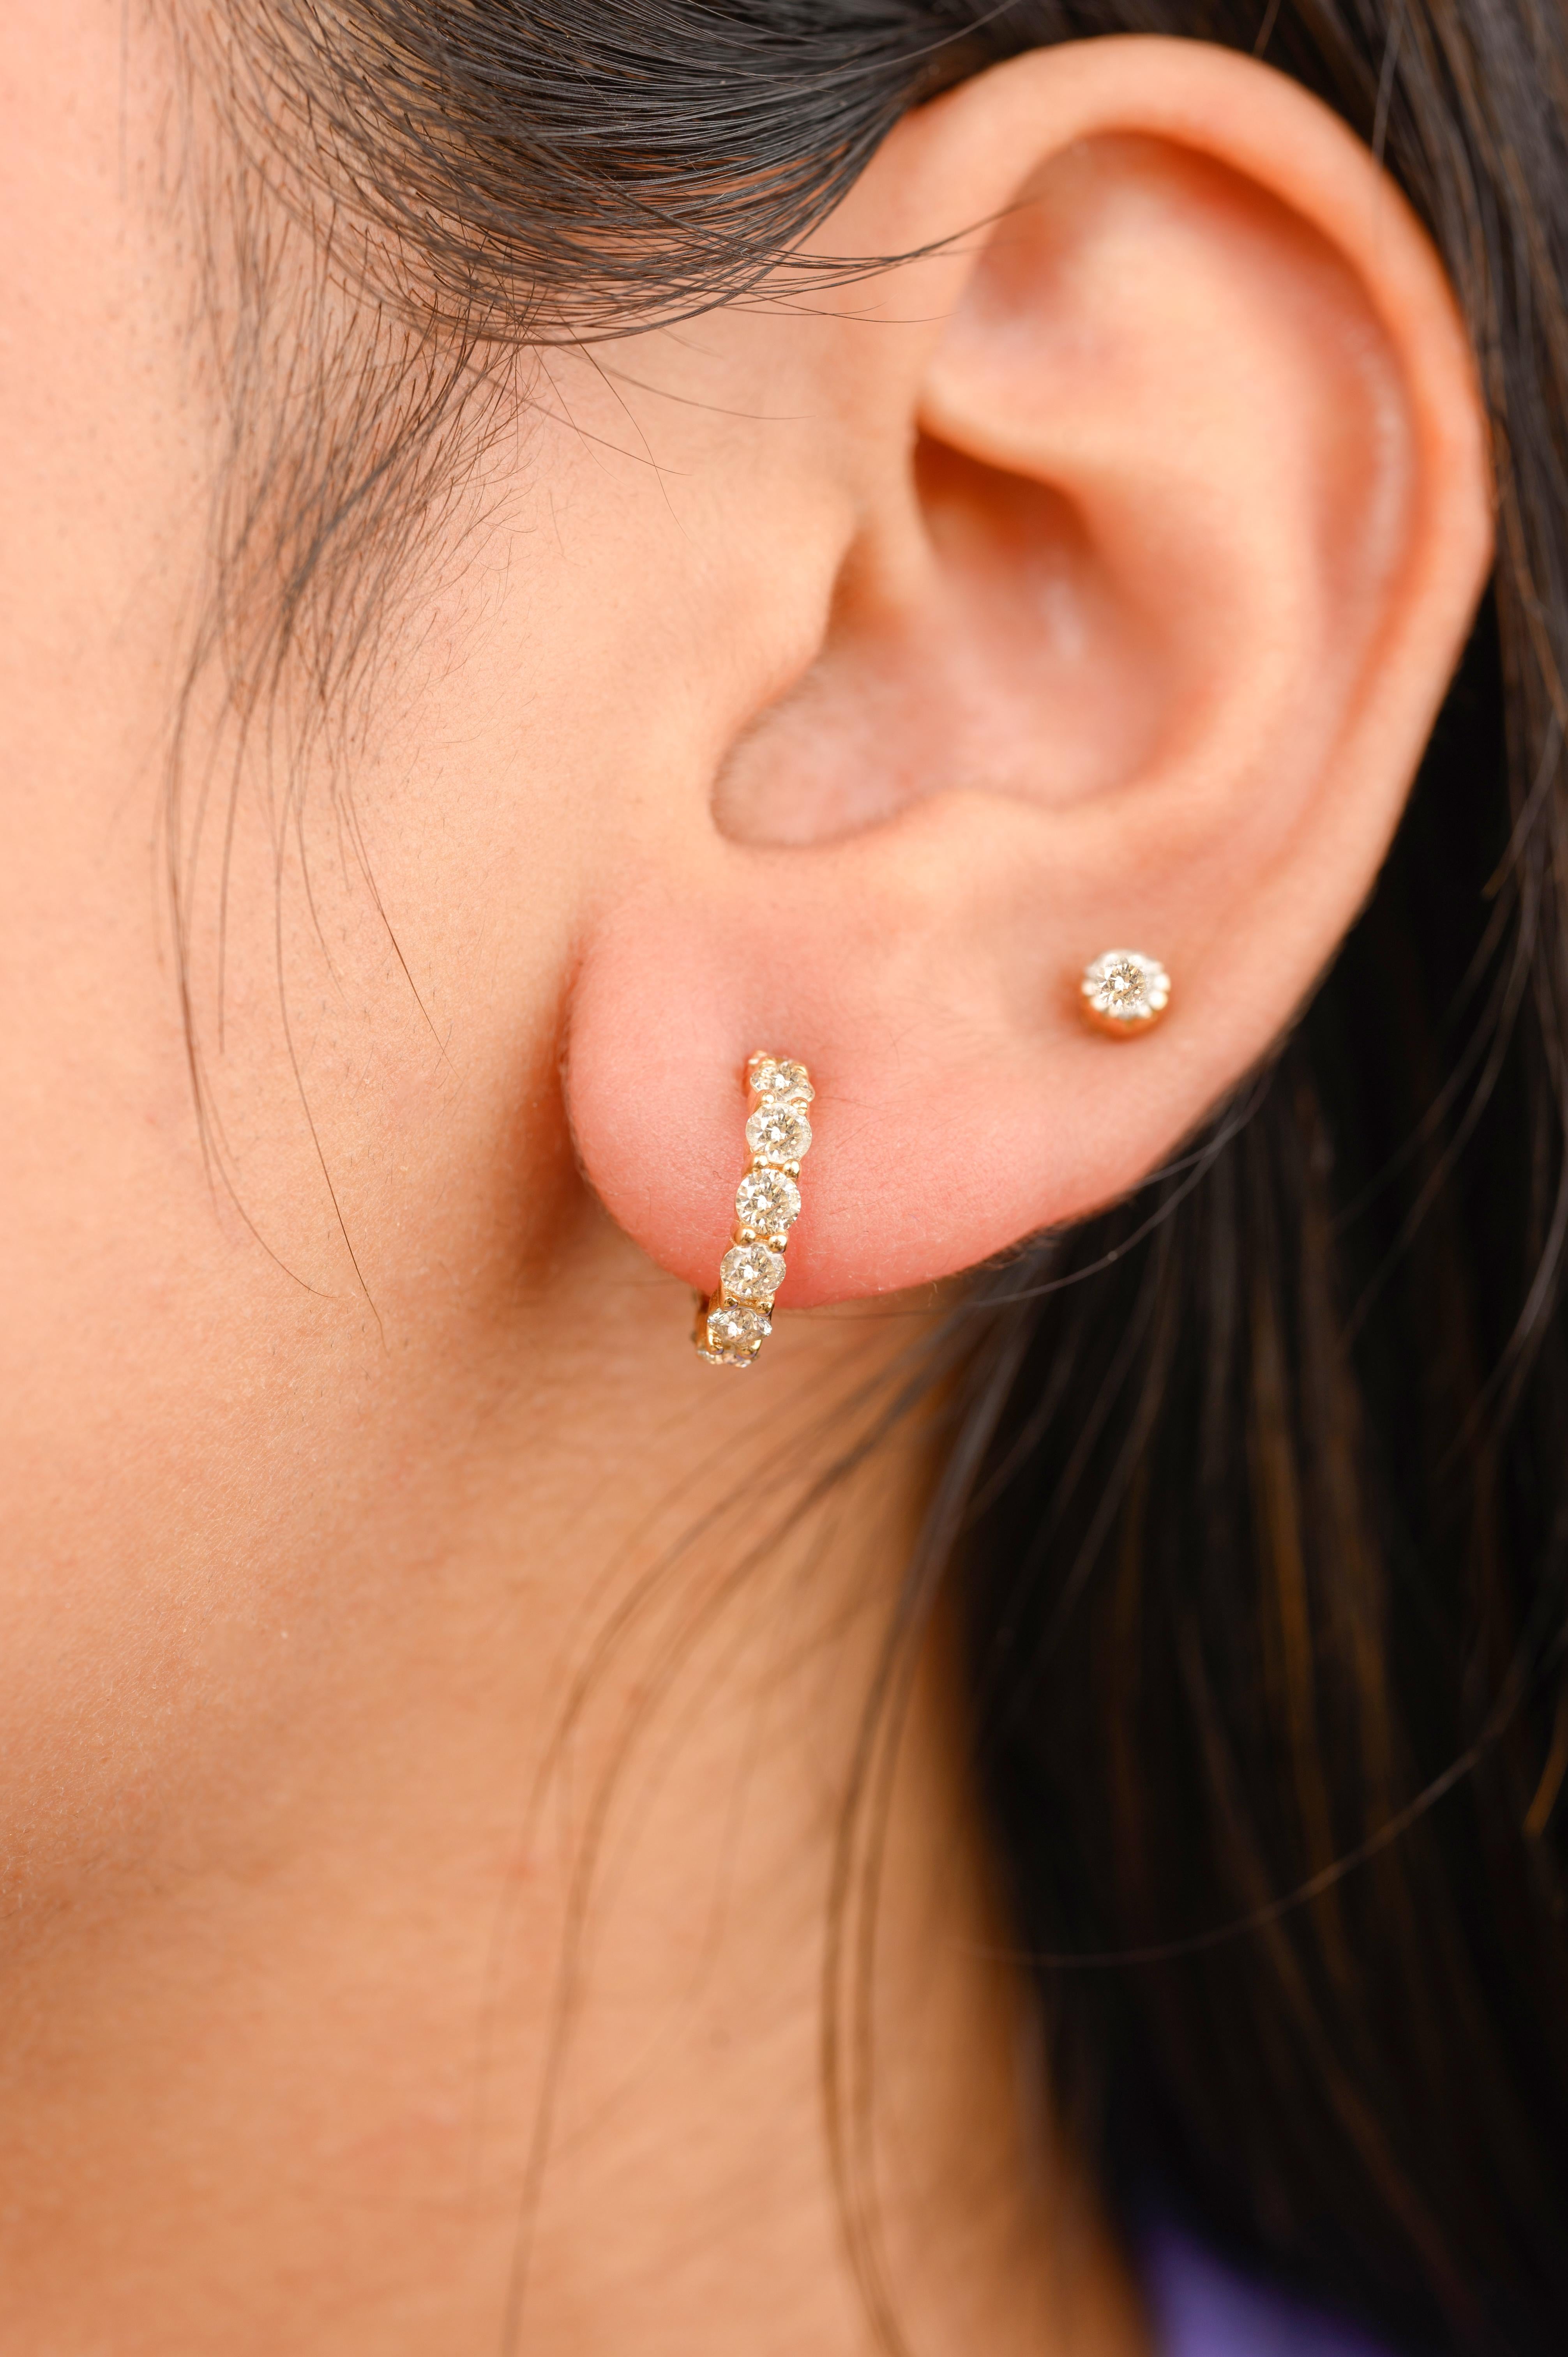 Boucles d'oreilles délicates en or 18 carats avec des diamants pour tous les jours, afin de mettre en valeur votre look. Vous aurez besoin de boucles d'oreilles pour affirmer votre look. Ces boucles d'oreilles créent un look étincelant et luxueux